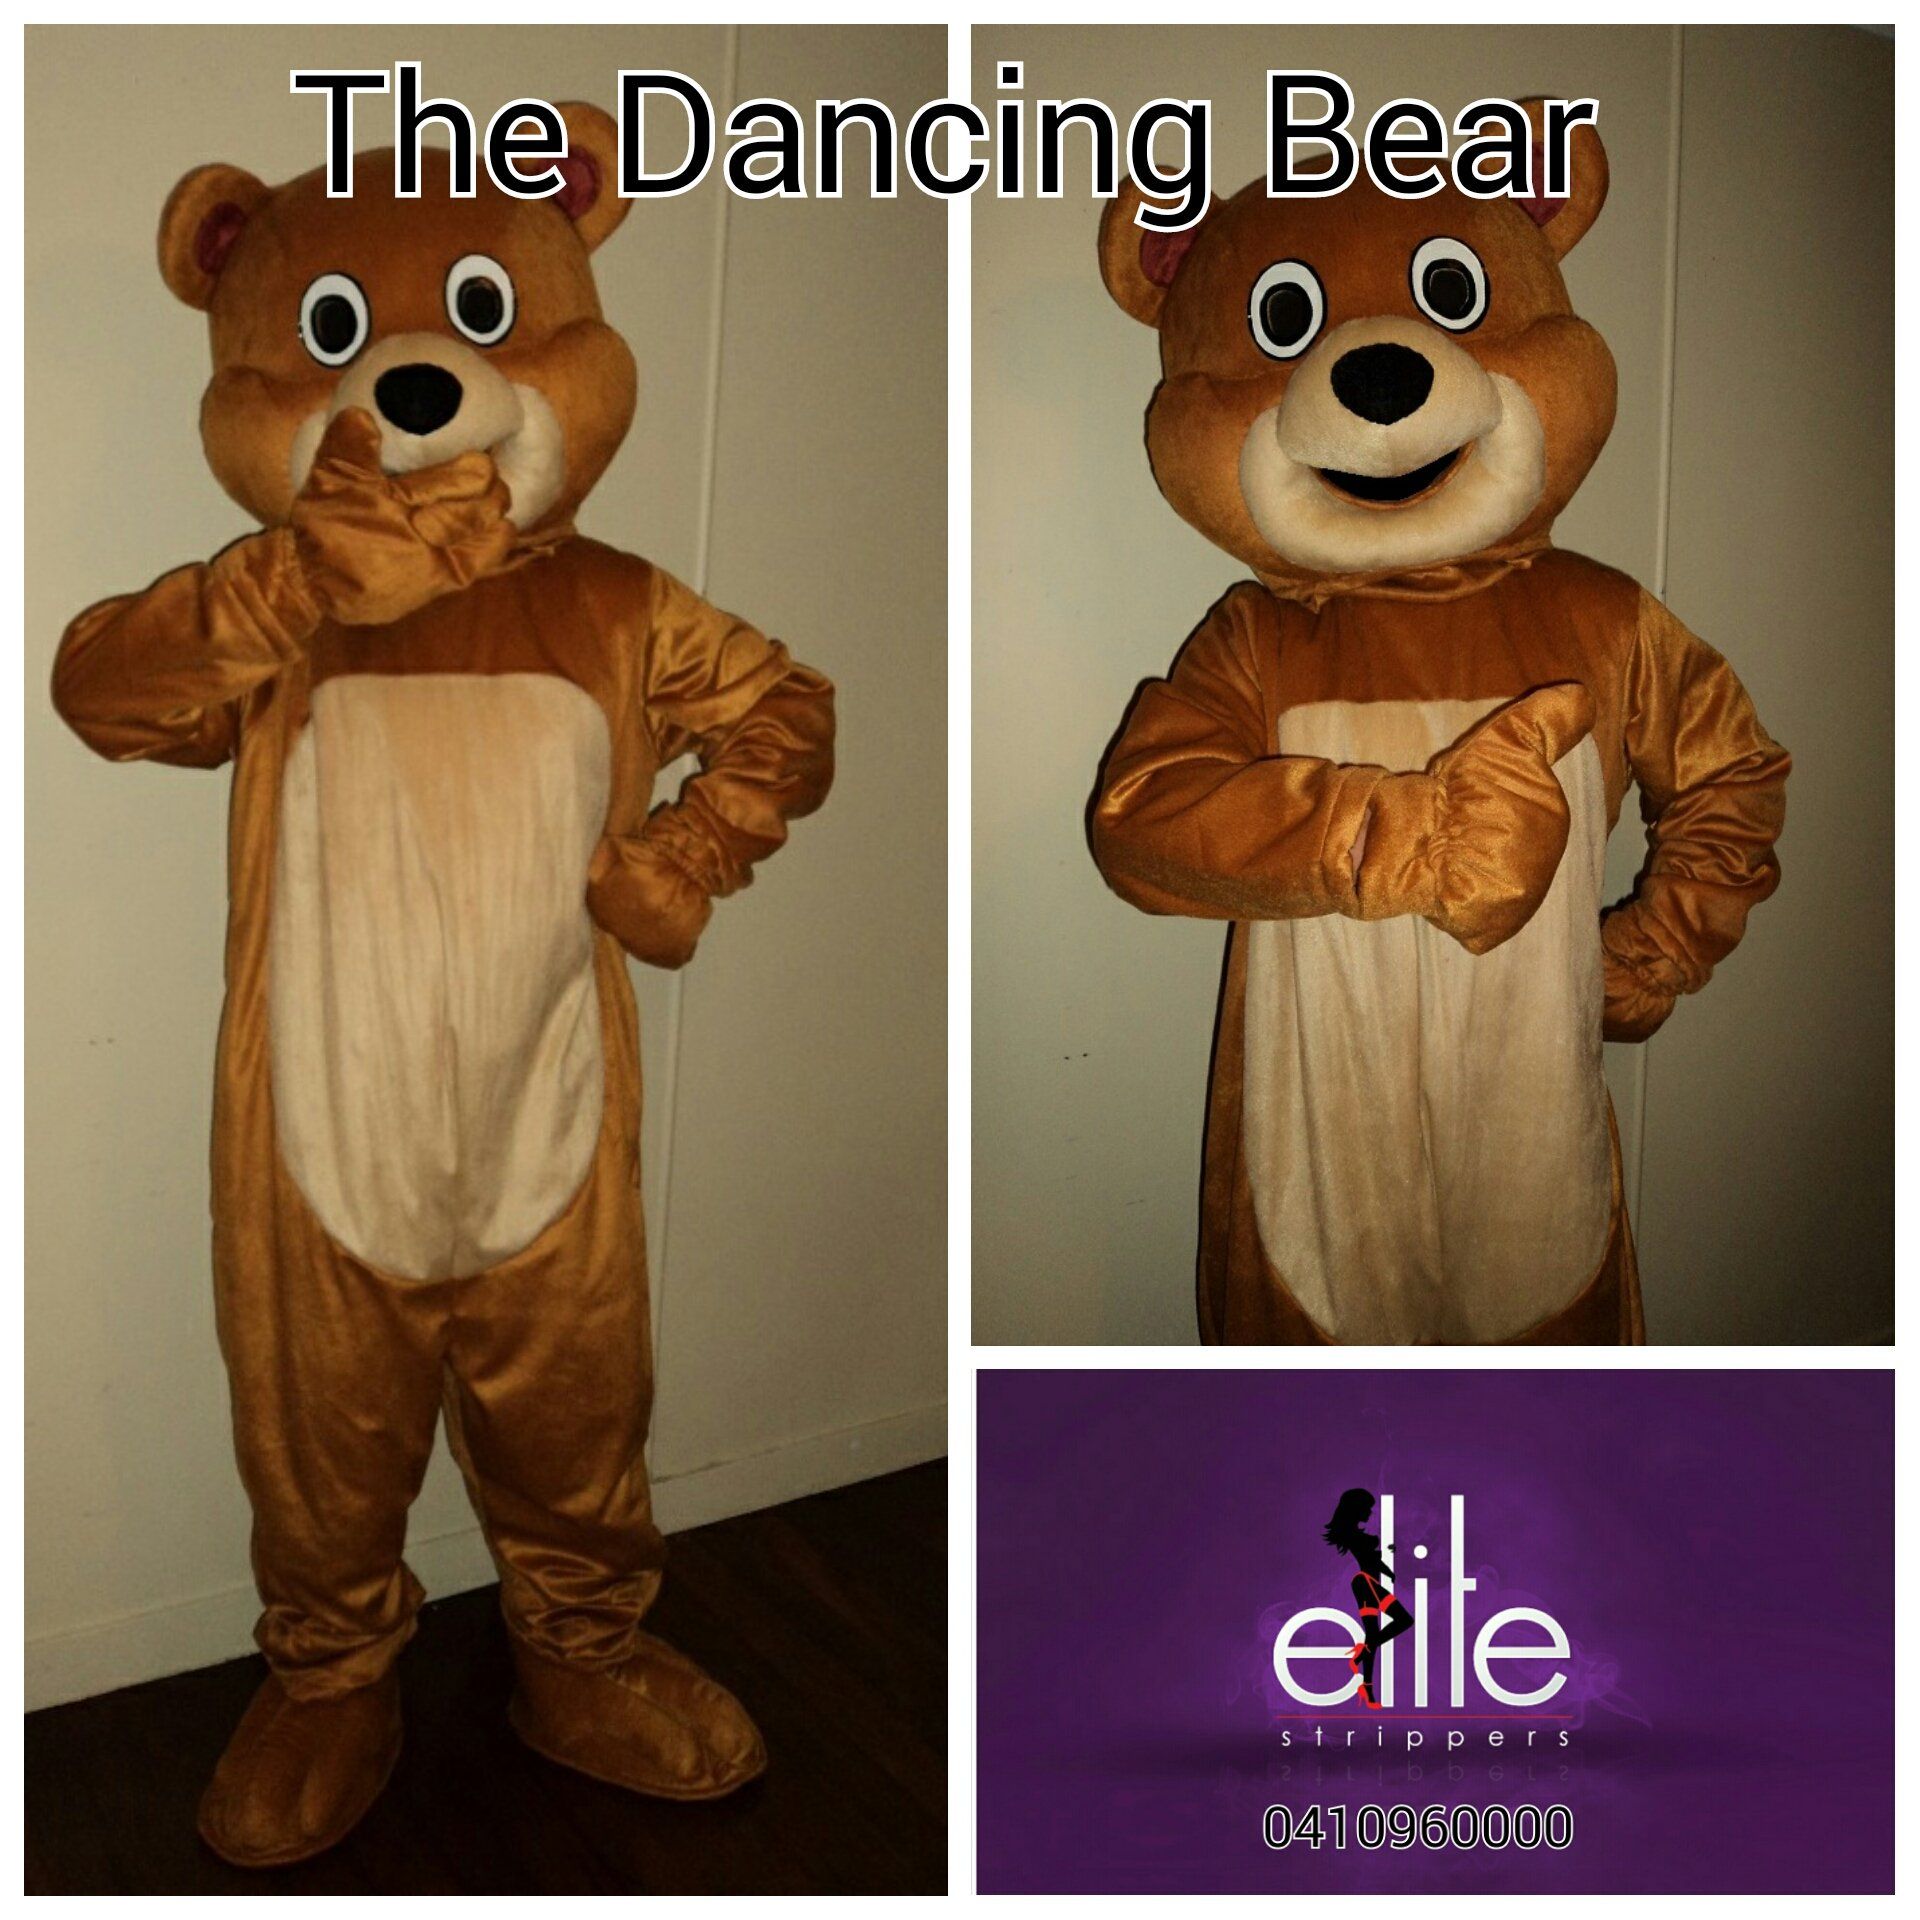 Brisbane's Dancing Bear Elite Strippers